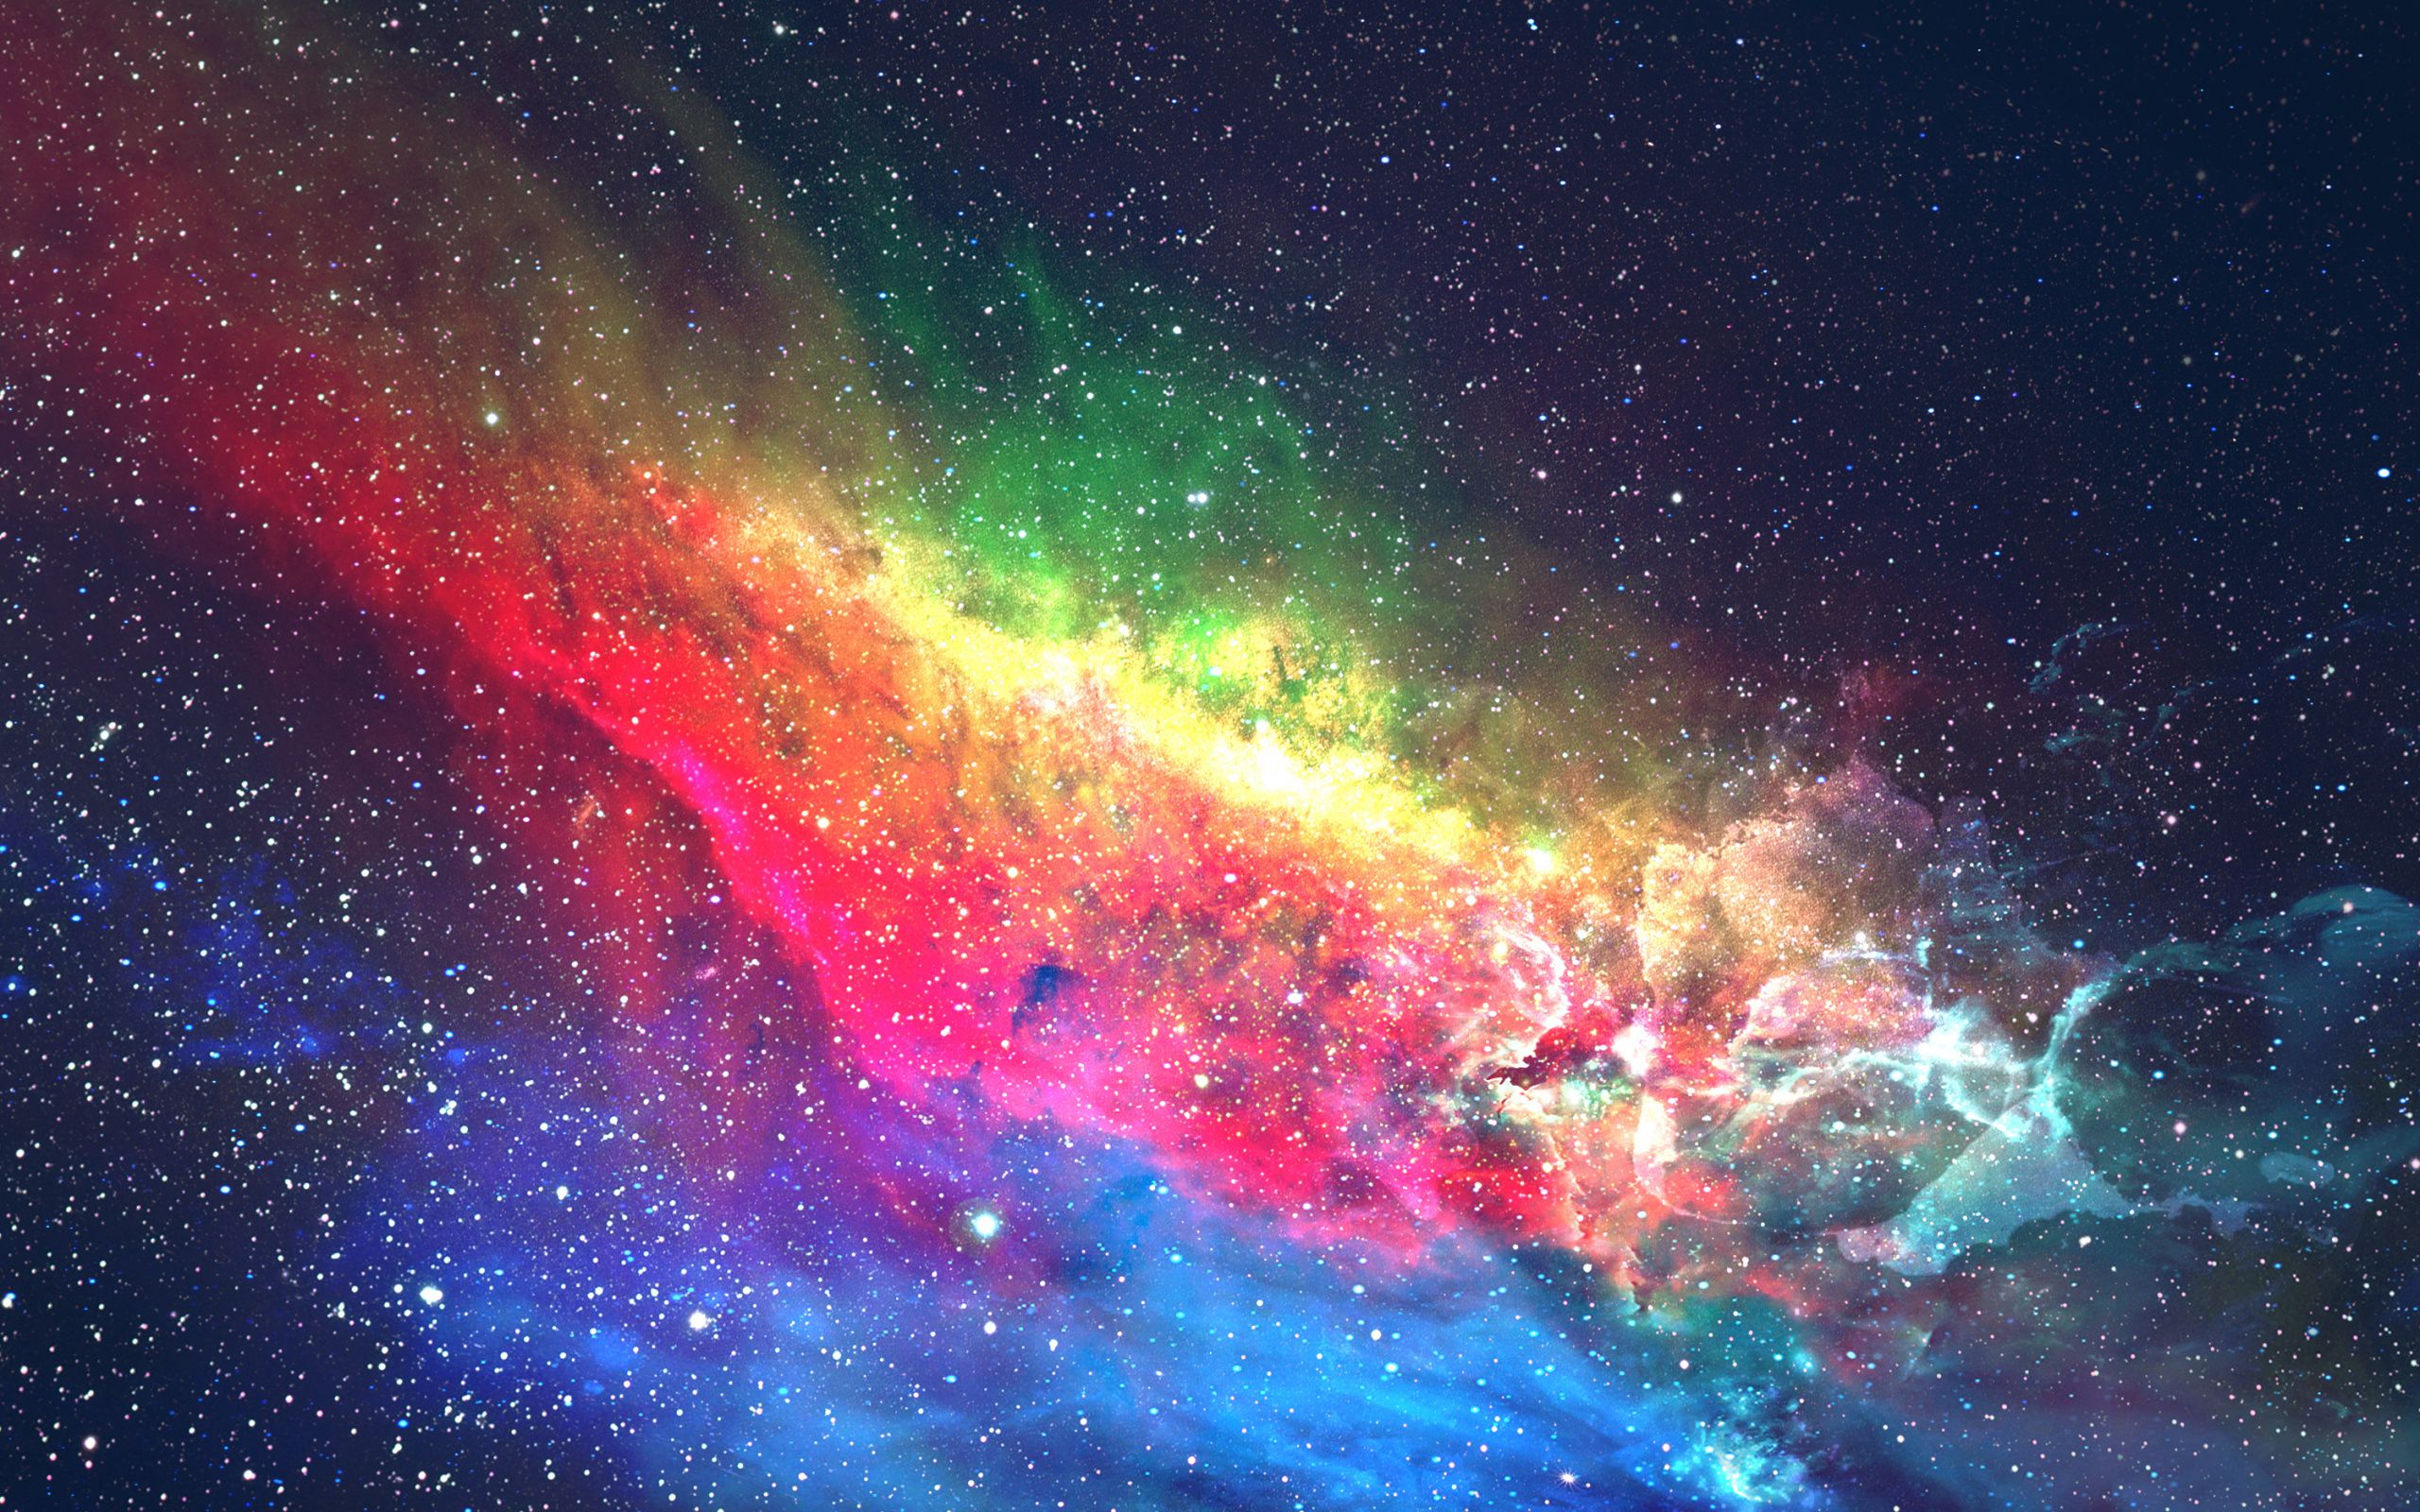  High quality colorful galaxy background đẹp và nổi bật nhất